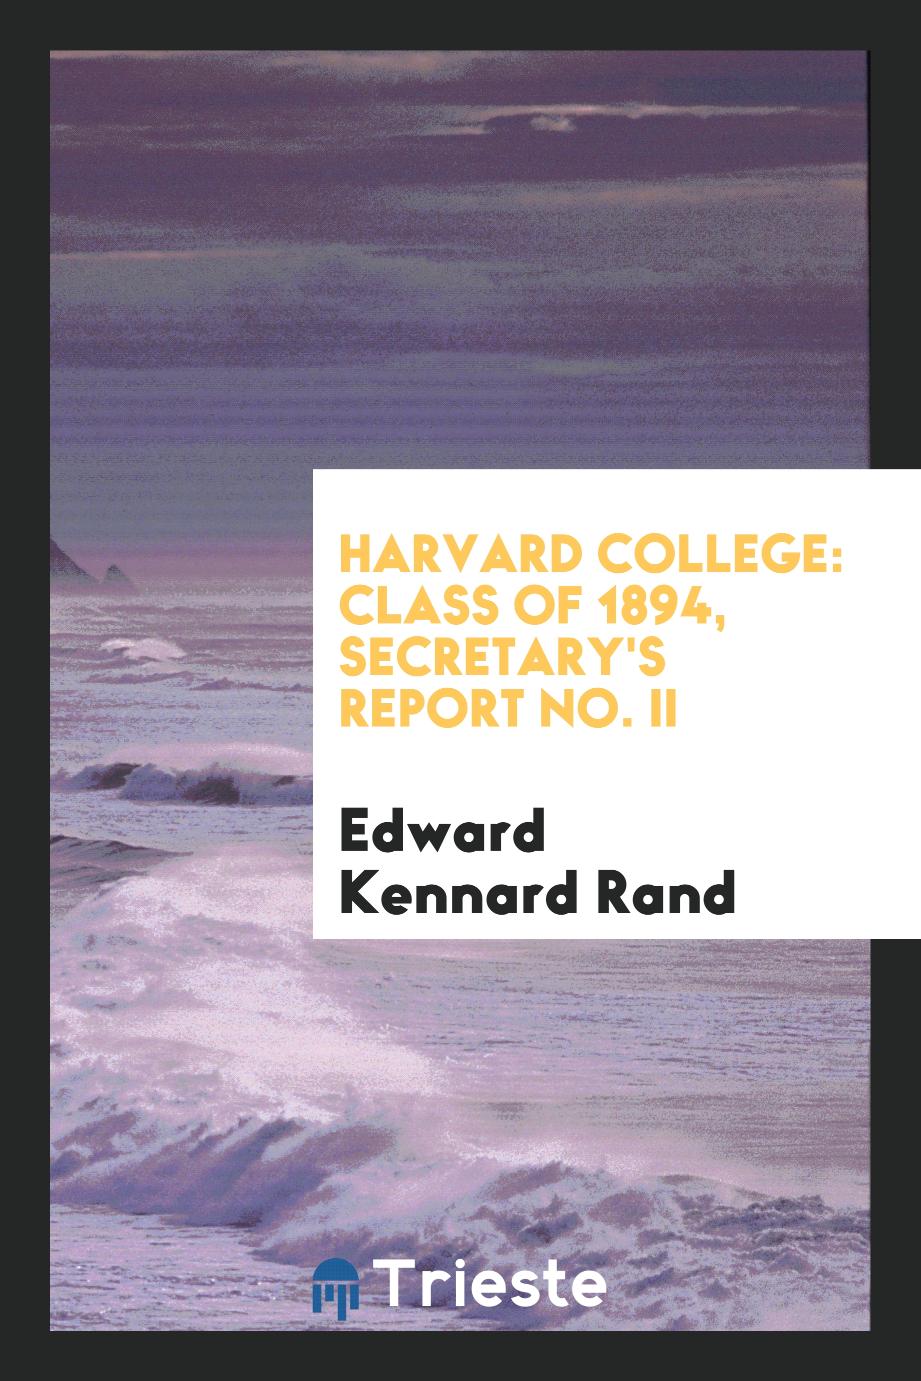 Harvard College: Class of 1894, Secretary's Report No. II